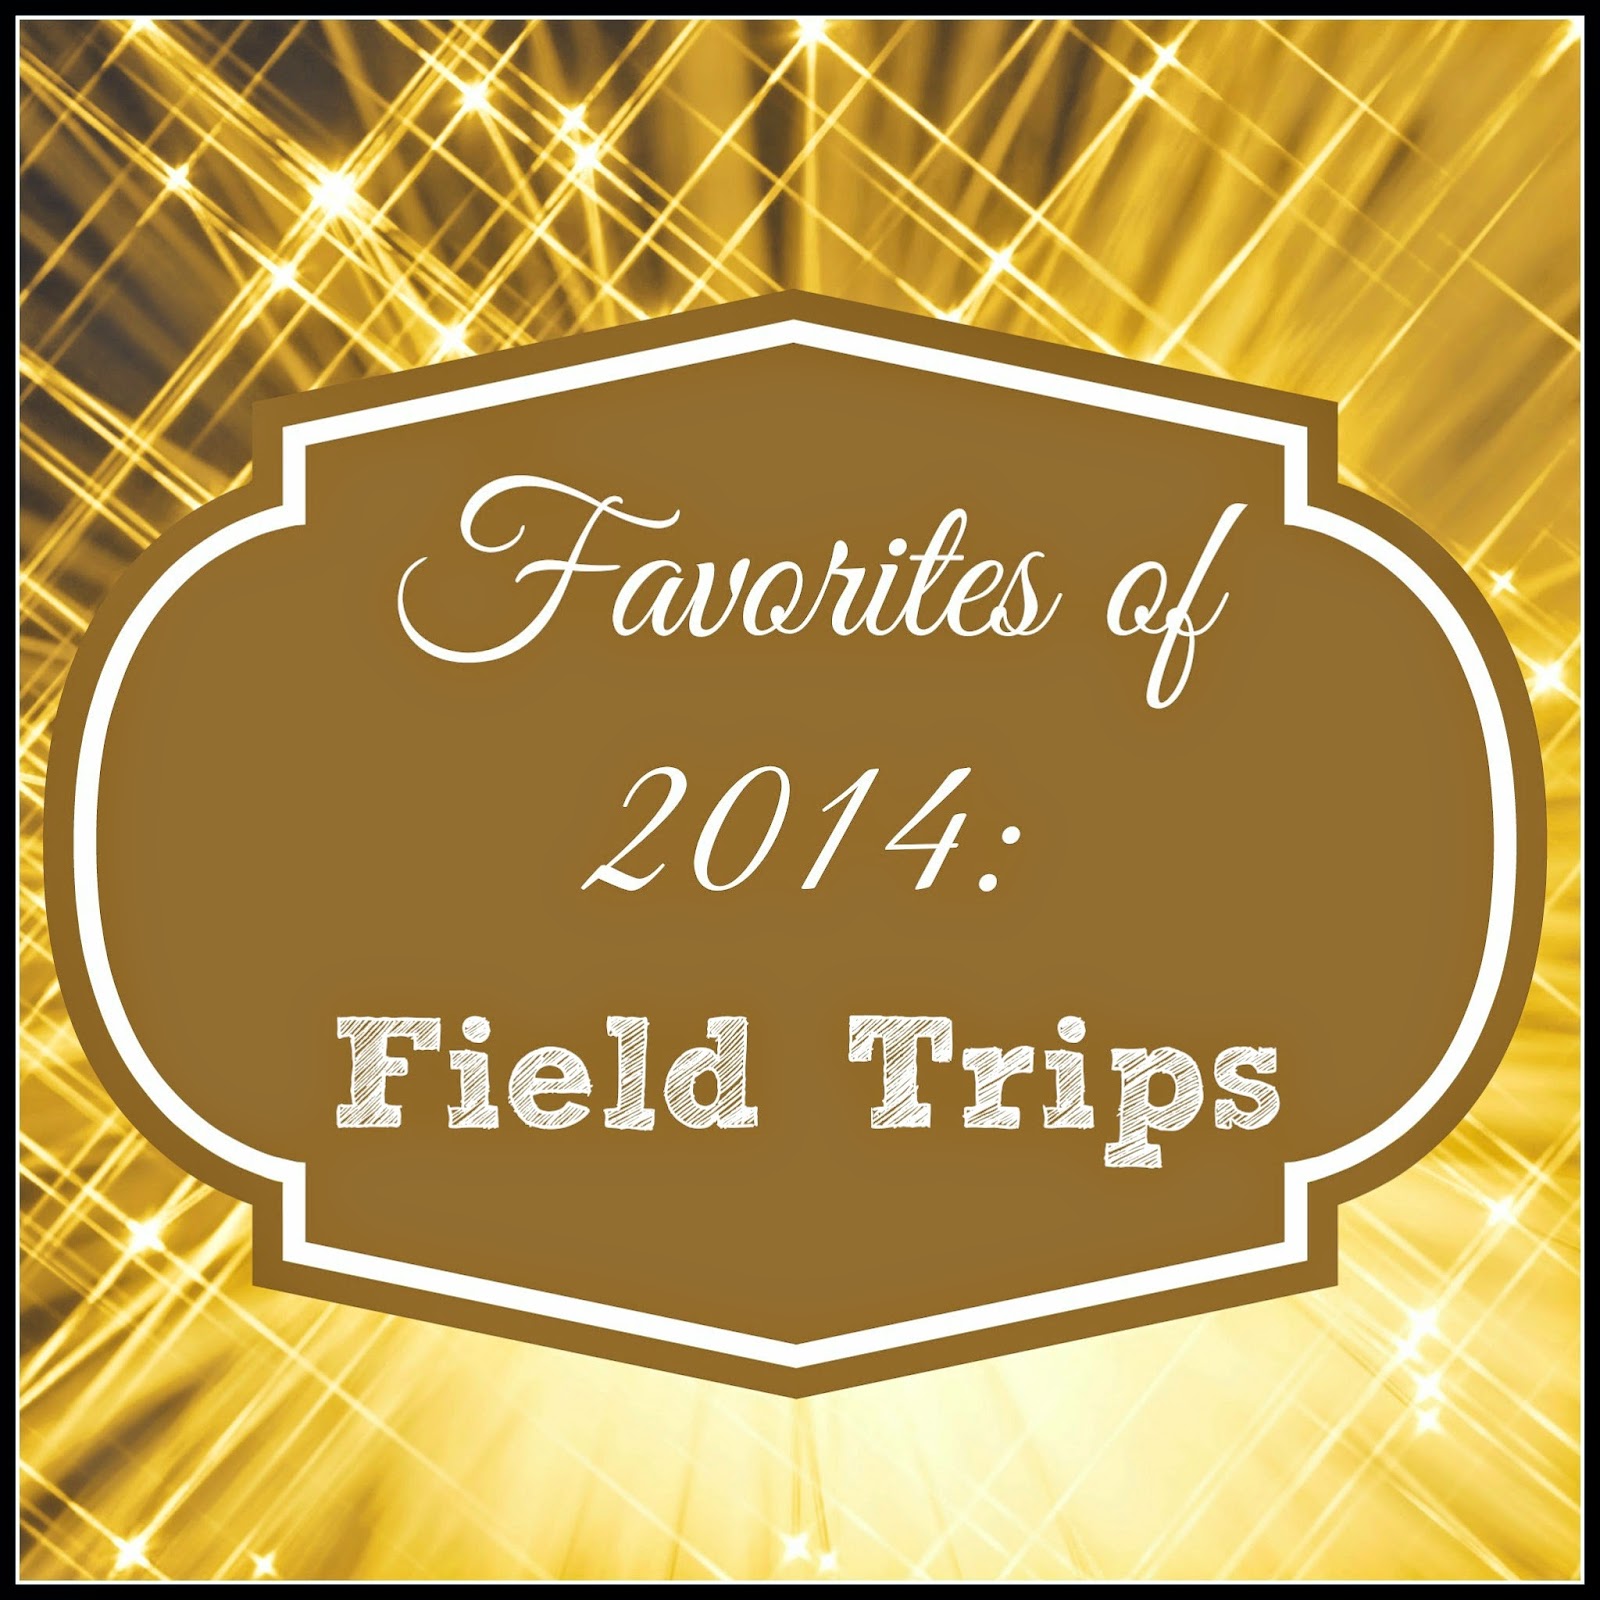 Favorite #FieldTrips of 2014 